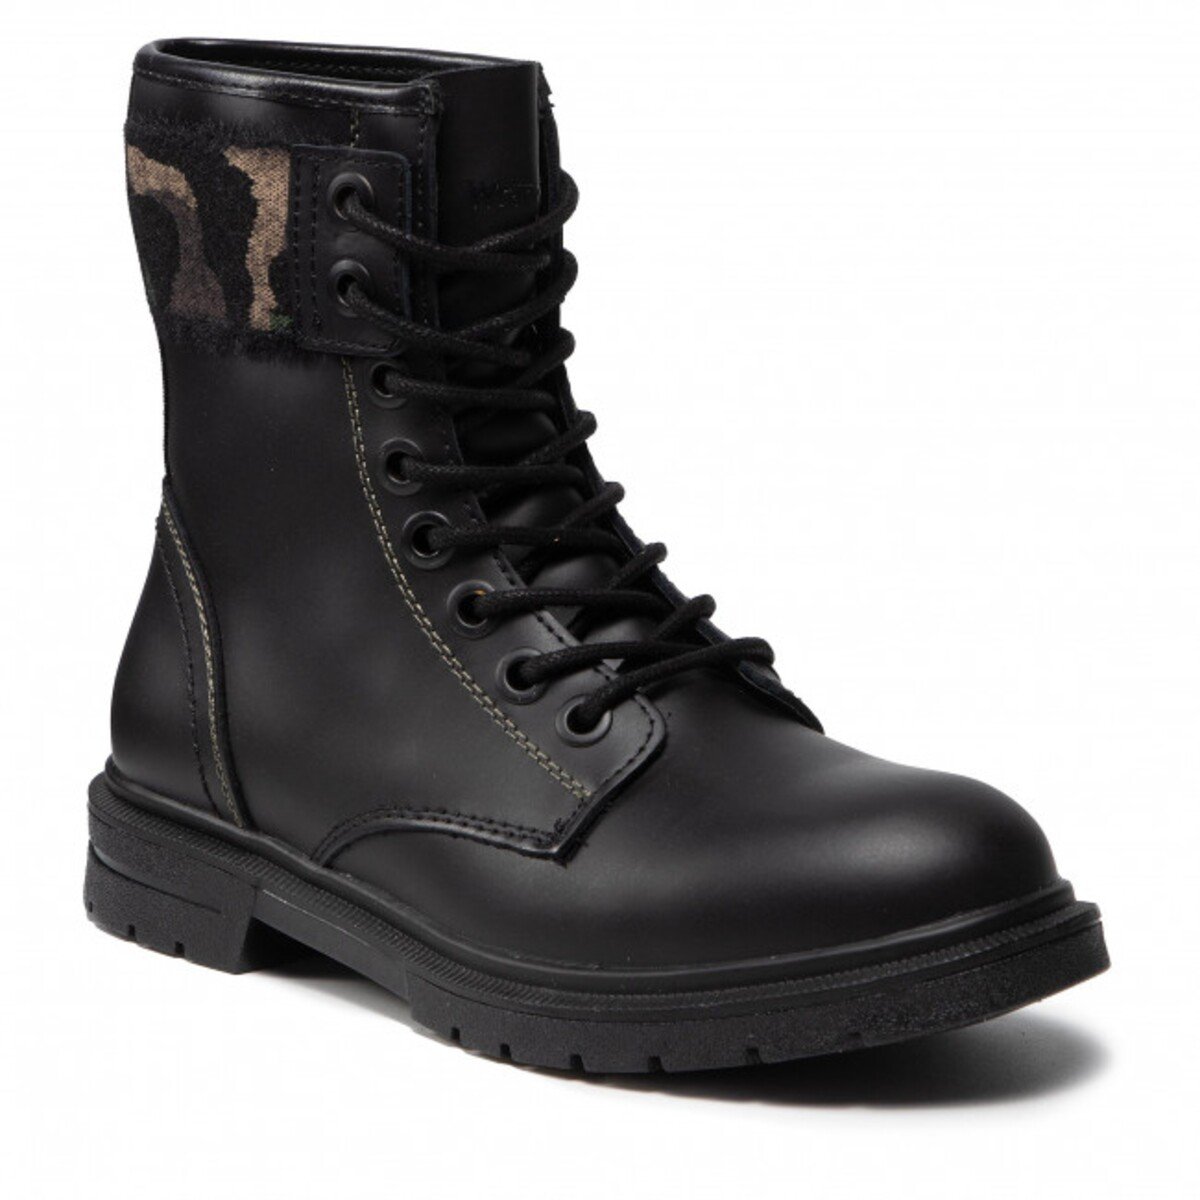 Štylové čierne combat boots so zvieracou potlačou a šnurovaním ponúka značks Wrangler. Na eshope eobuv ich môžeš mať už za 57 eur.